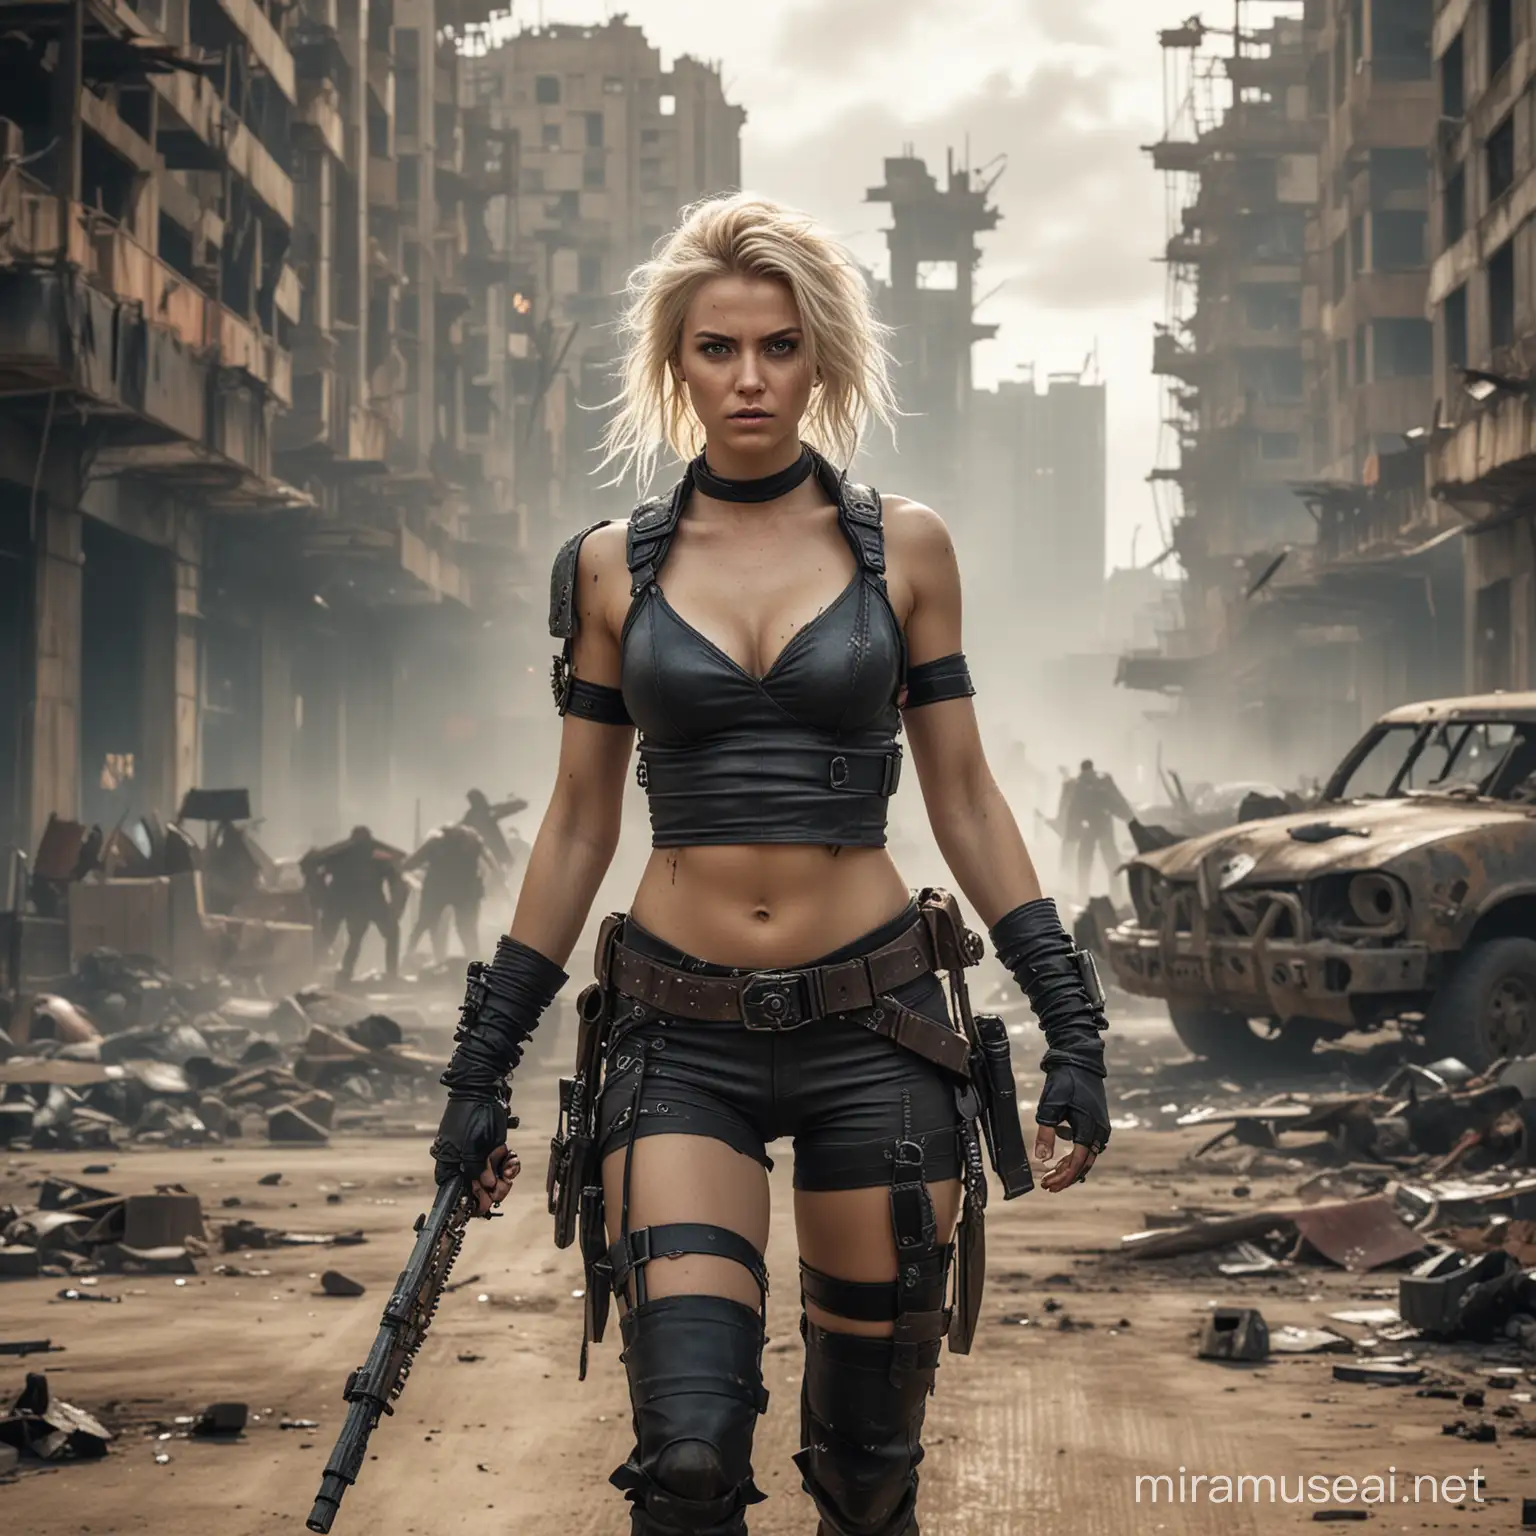 Fierce Blond Warrior Battles Zombies in Cyberpunk Apocalypse